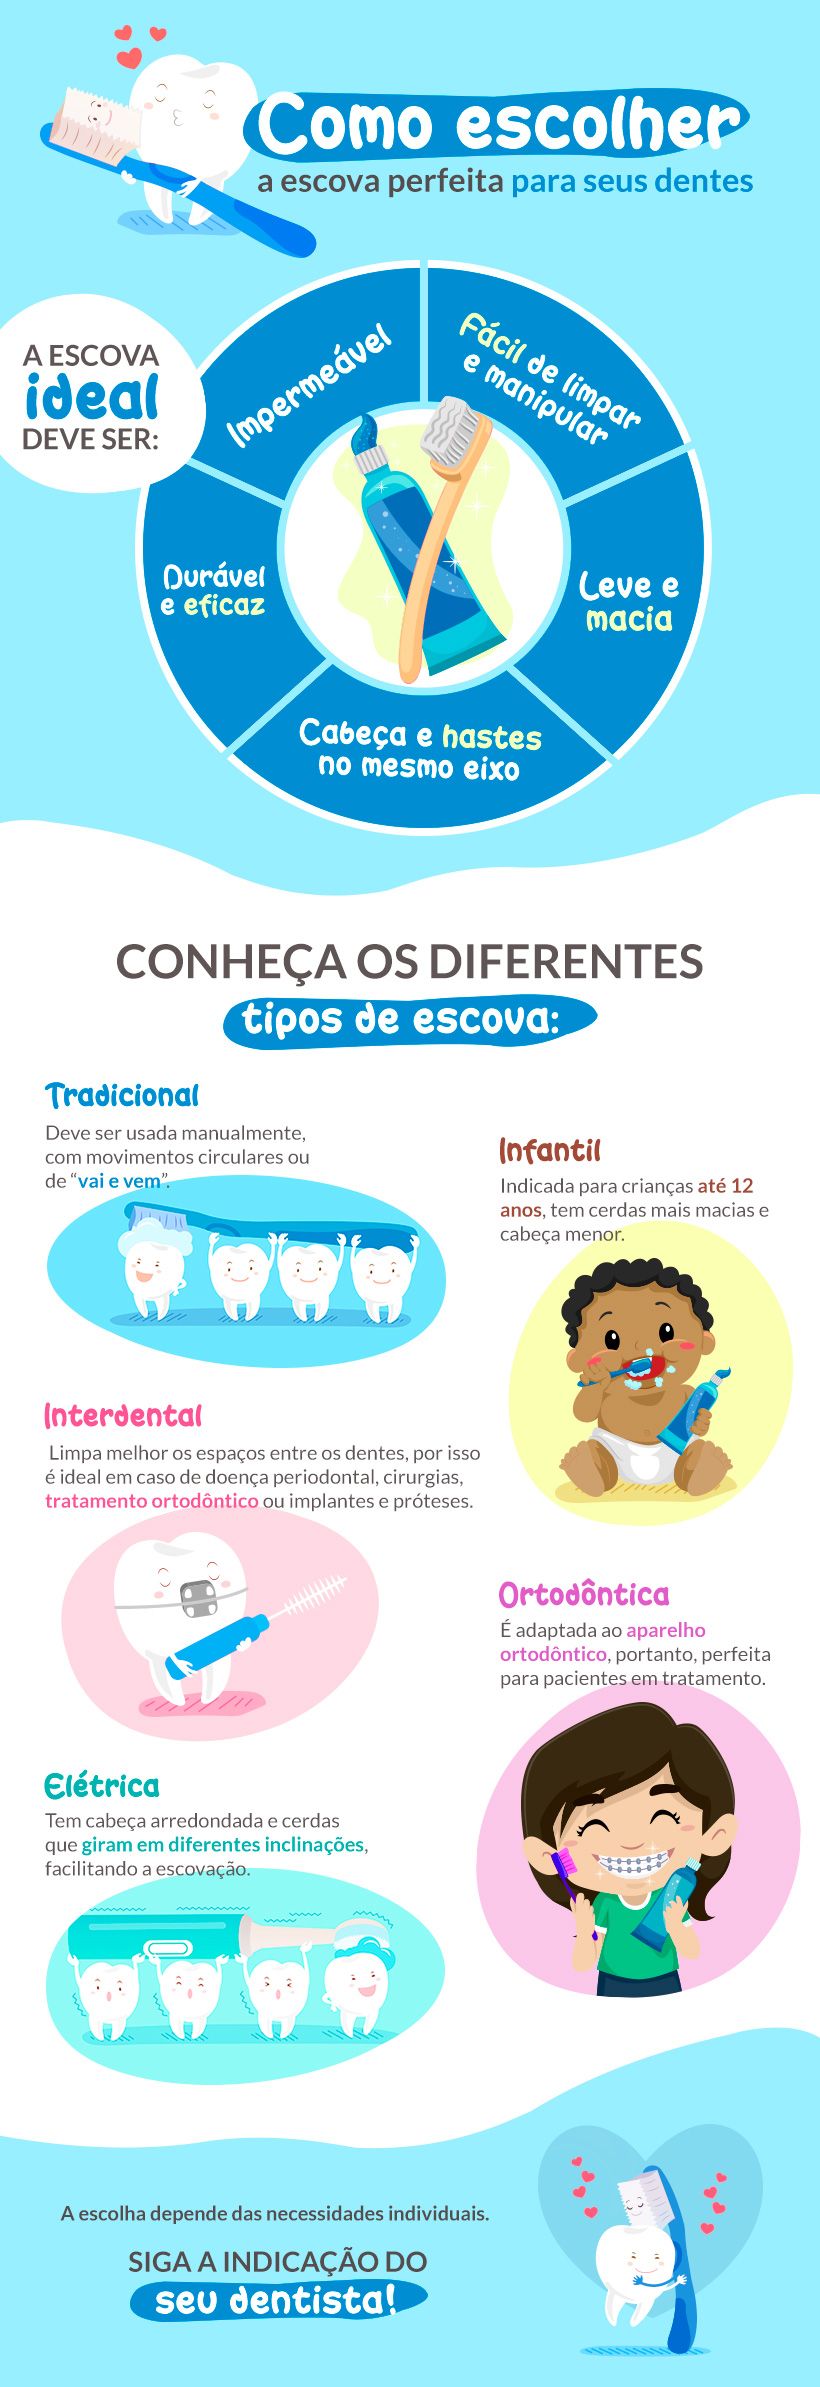 A escolha da escova de dente é um fator que pode fazer grande diferença na sua escovação. Saiba como decidir qual tipo é melhor para você!